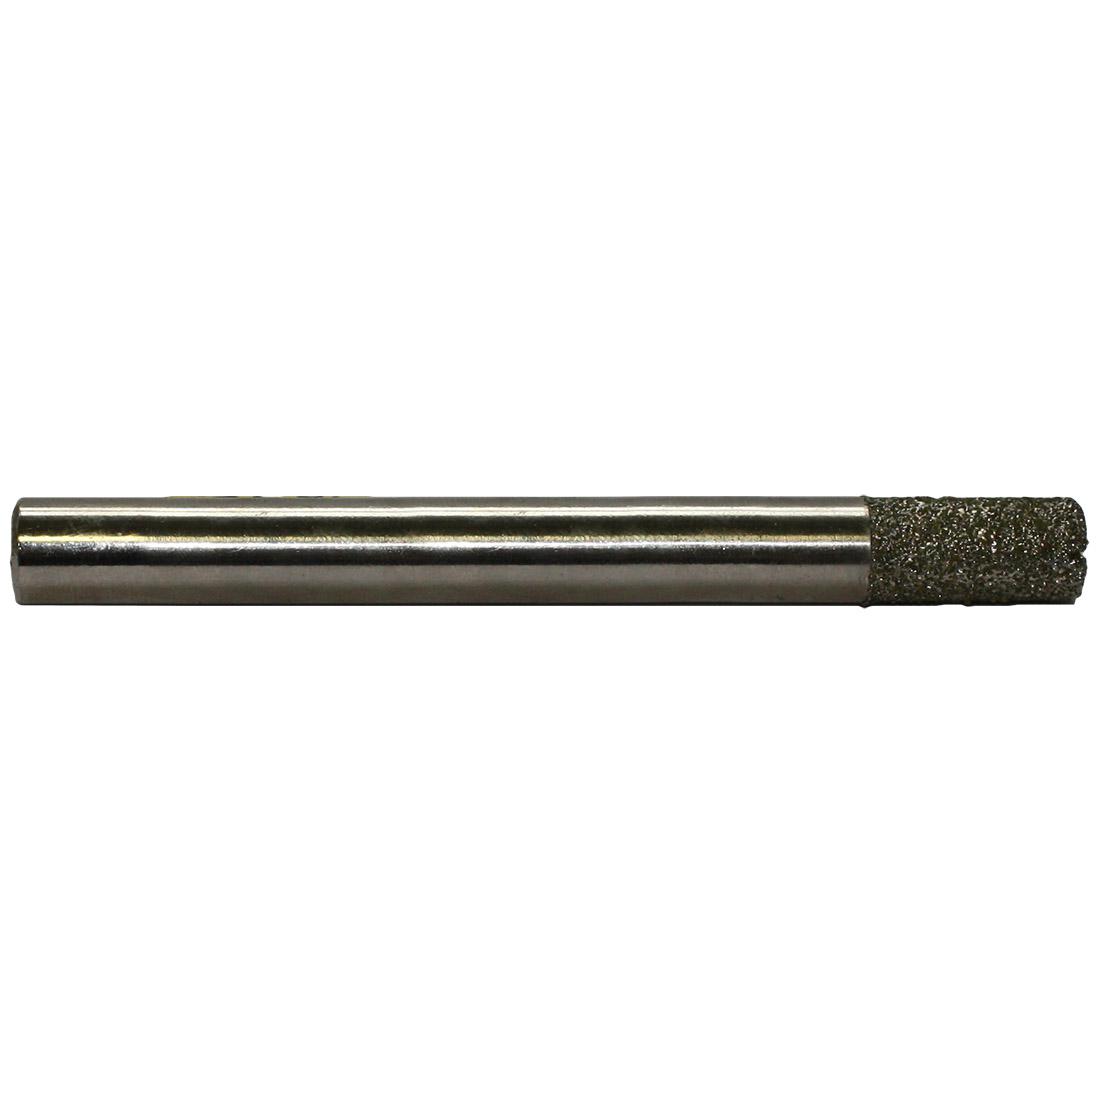 Фреза пальчиковая цилиндрическая для мрамора Ø 10 мм